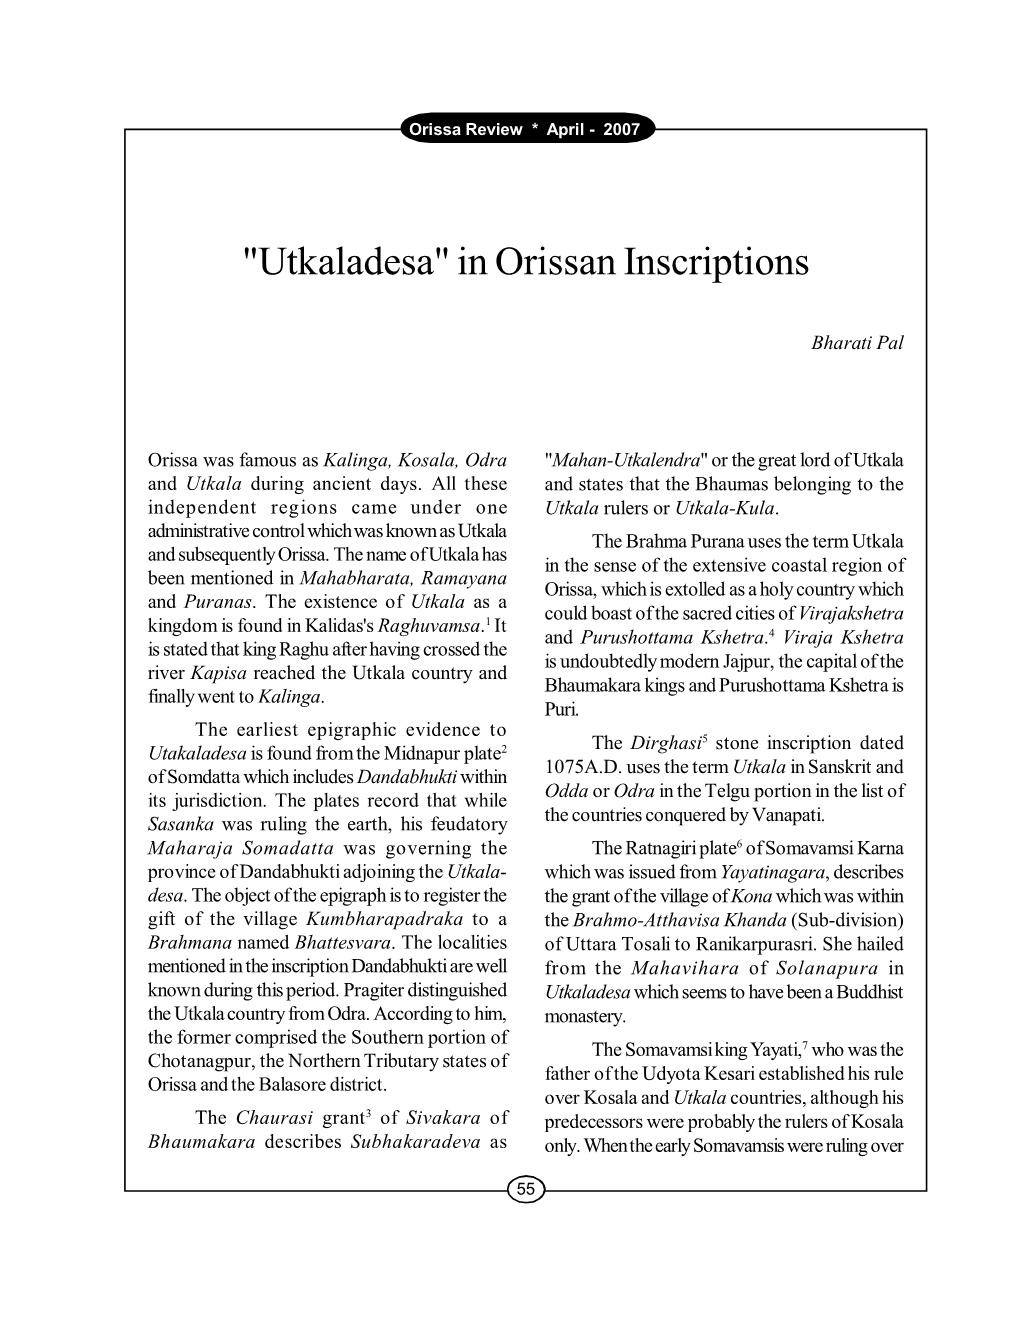 "Utkaladesa" in Orissan Inscriptions